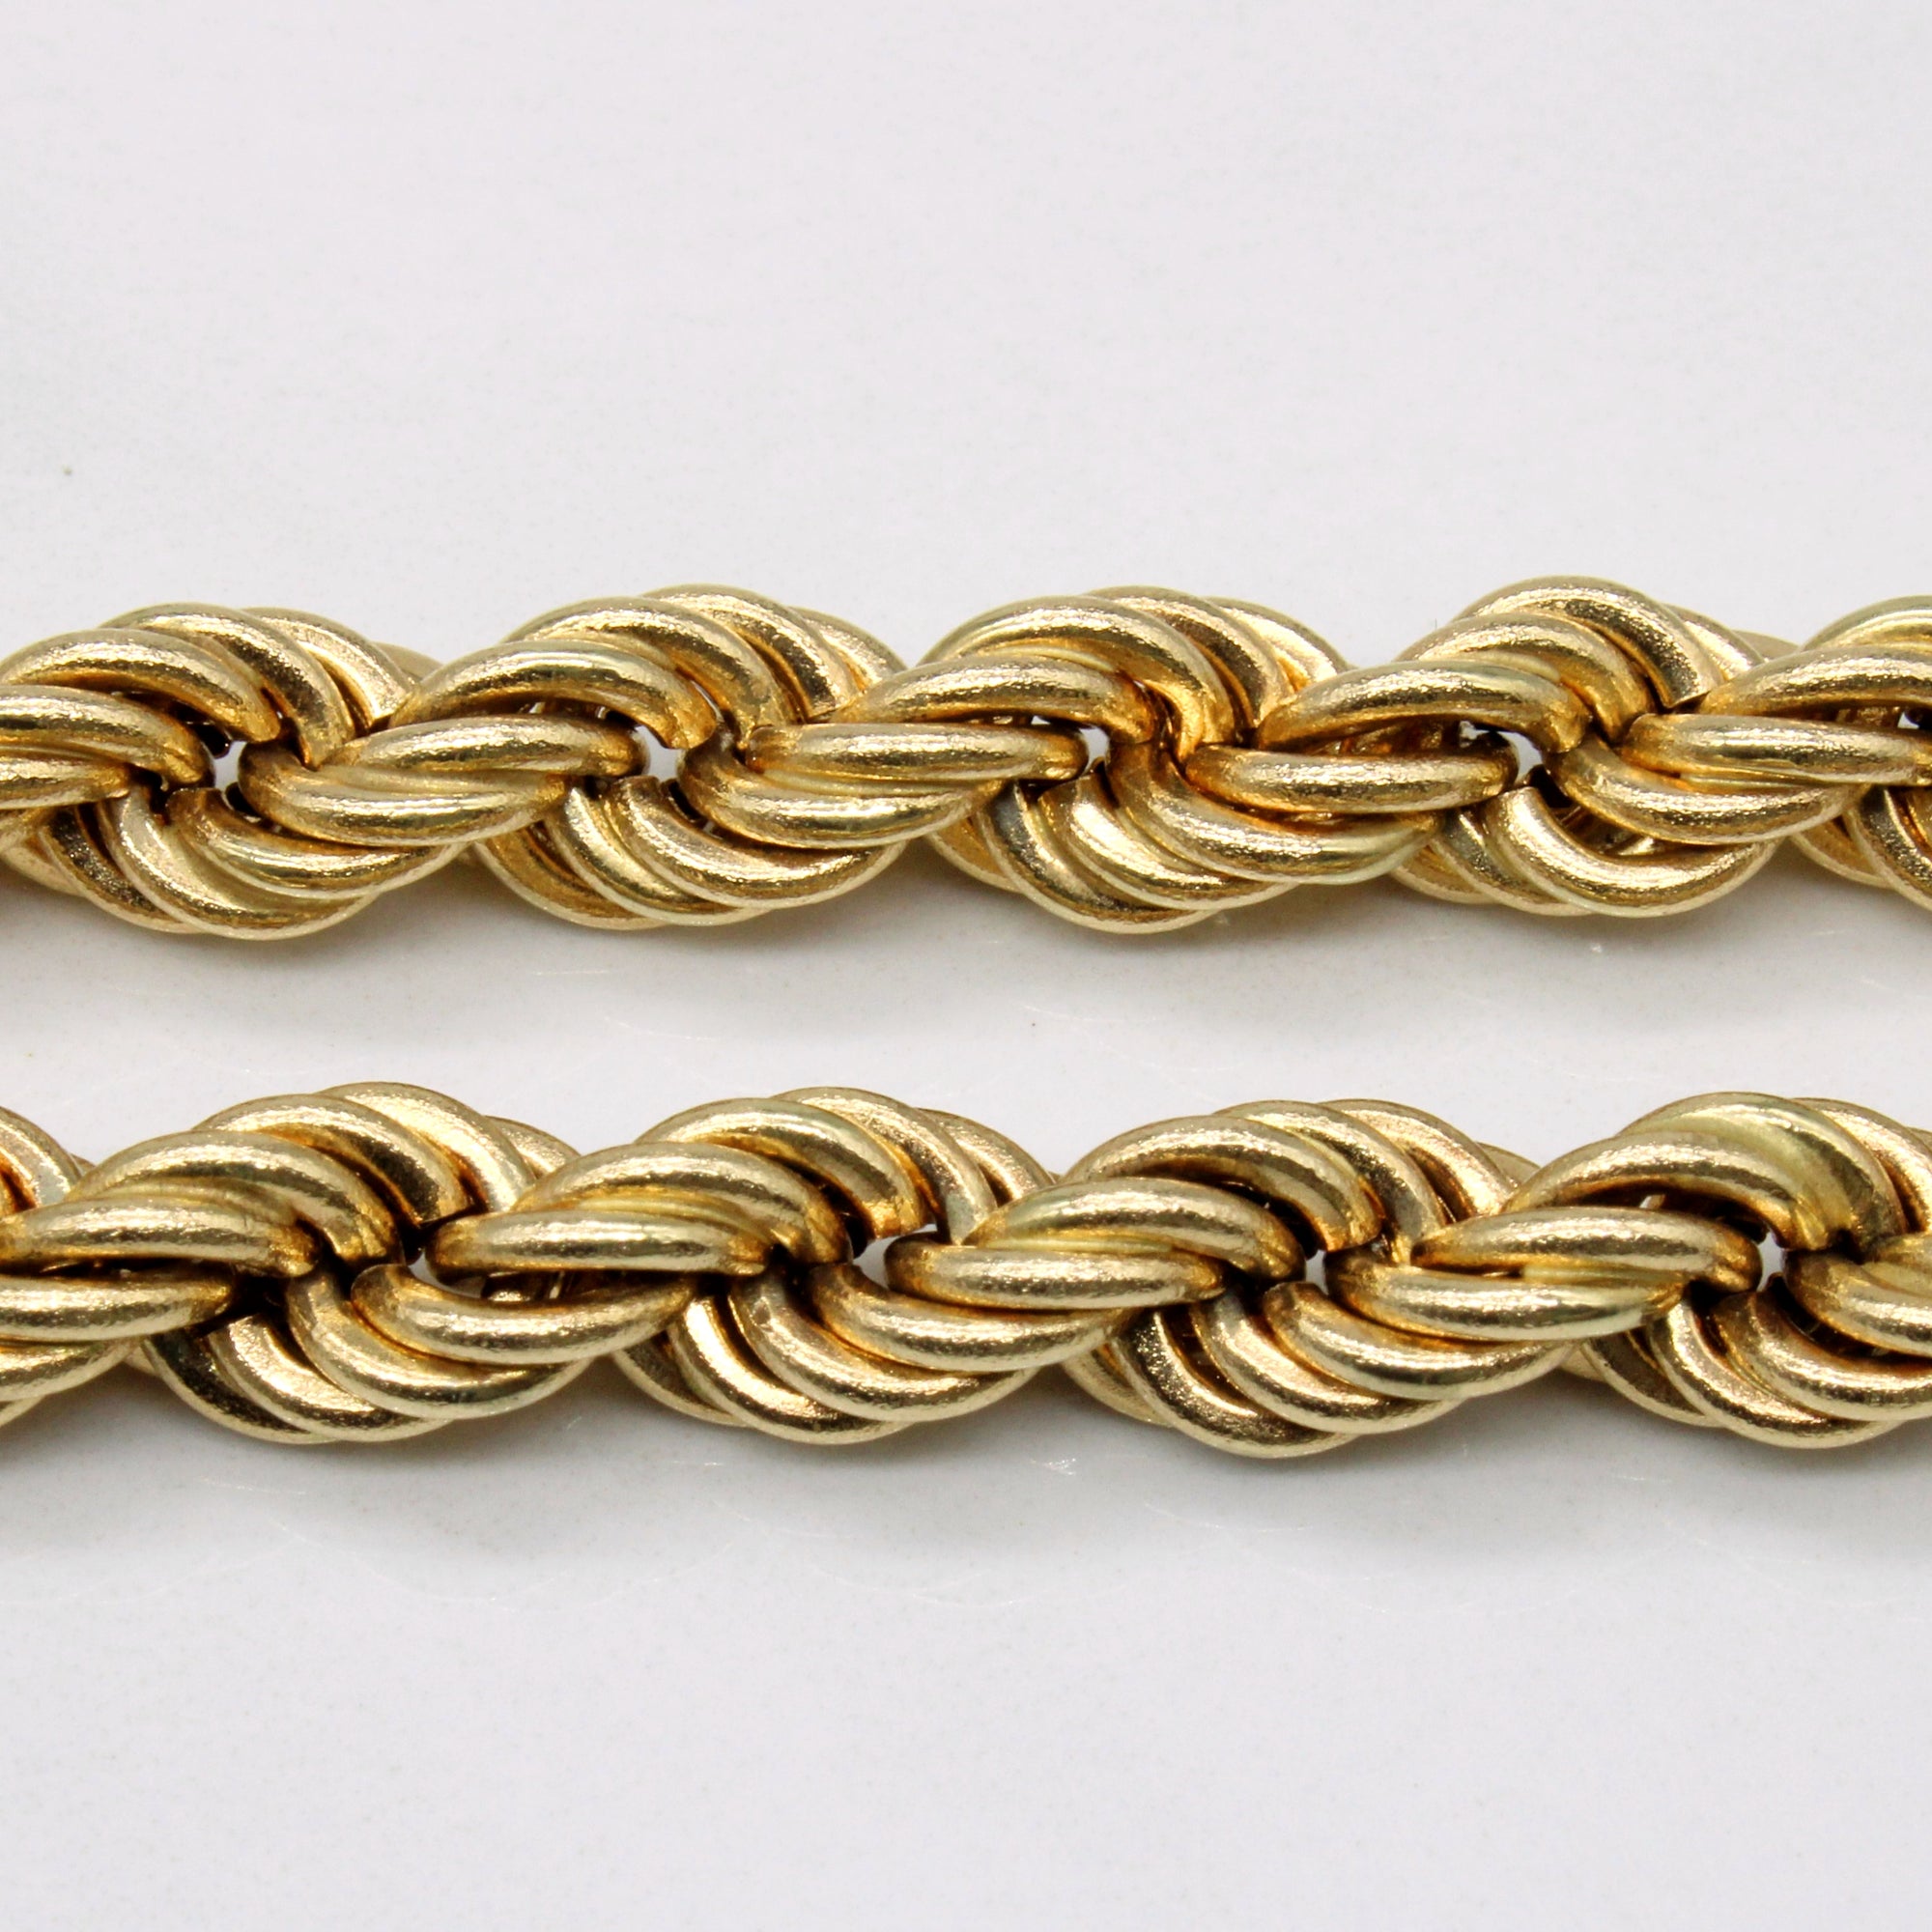 14k Yellow Gold Rope Chain | 32